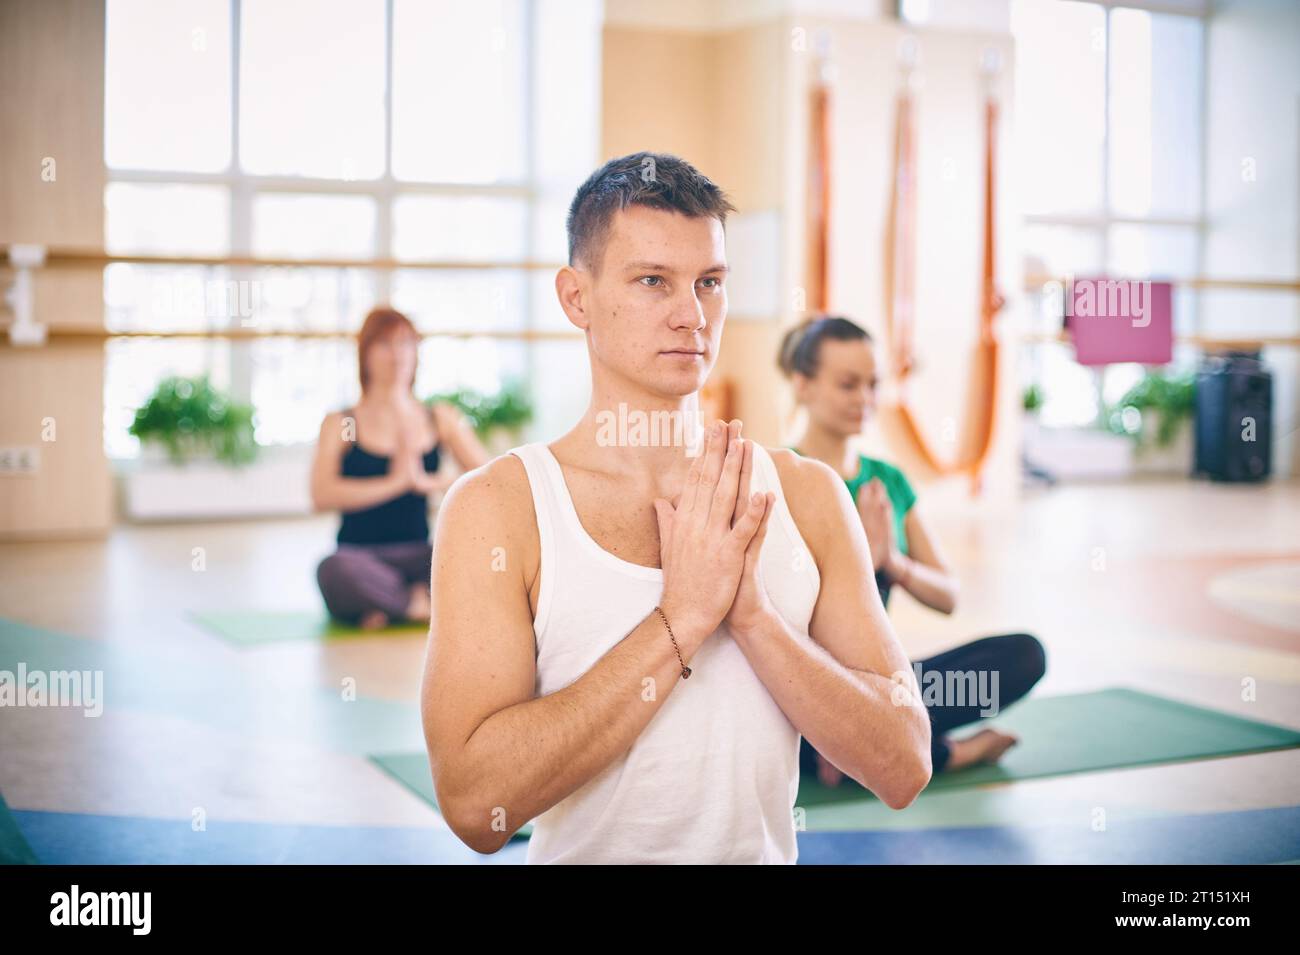 Gruppo di giovani sportivi che praticano lezioni di yoga con istruttore, seduti in allenamento Padmasana, posa del loto con mani piegate in namaste in yoga st Foto Stock